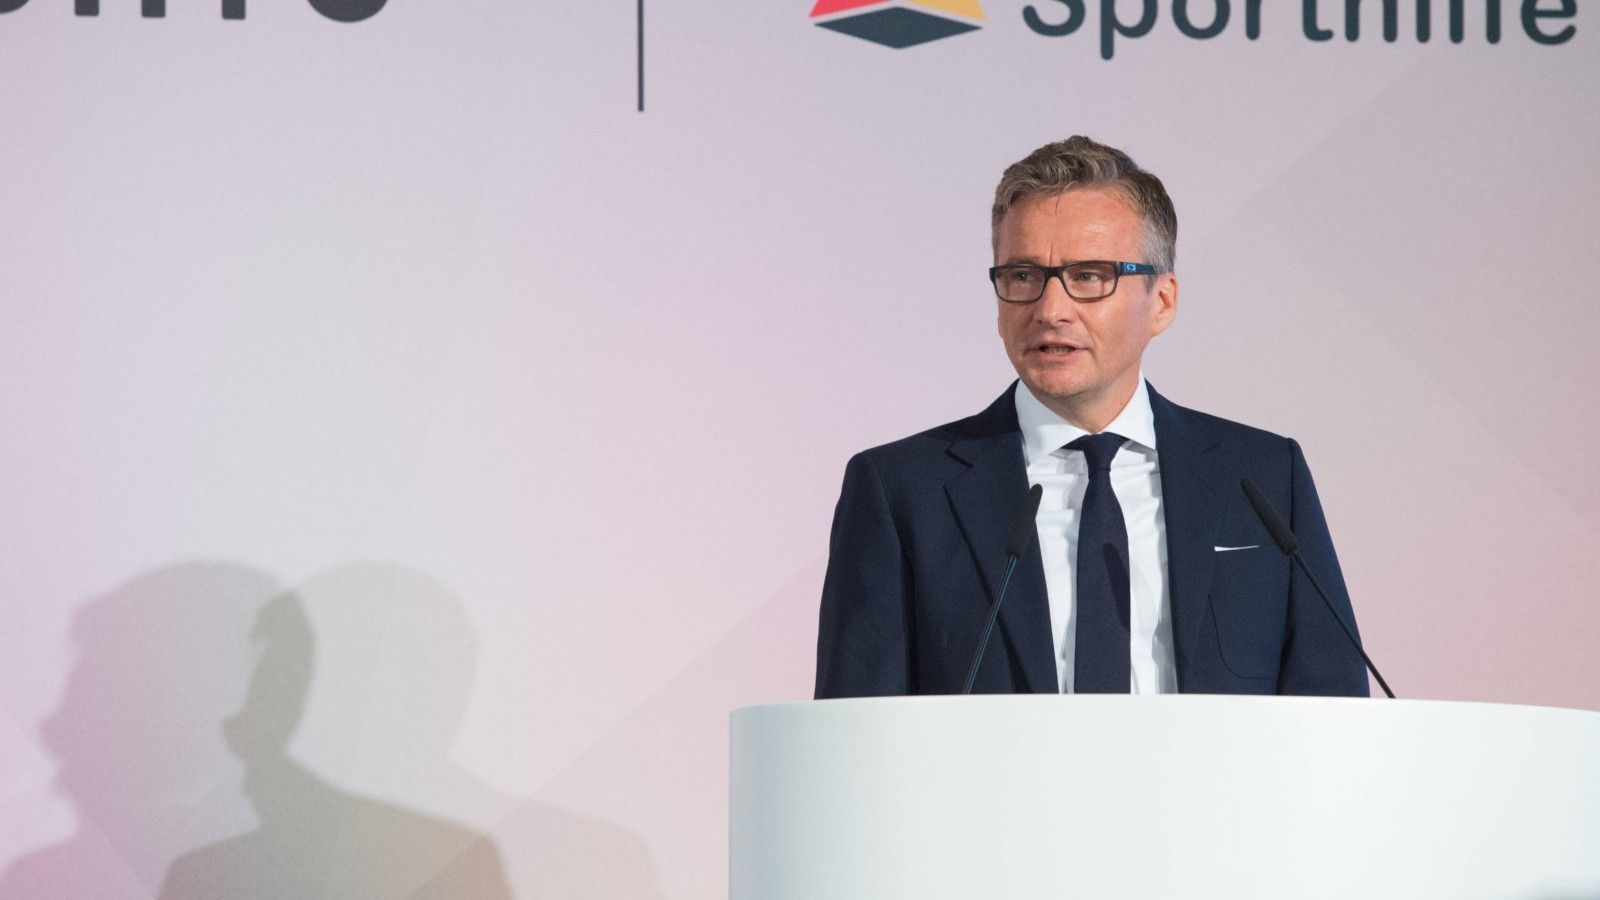 
                <strong>Thorsten Langheim</strong><br>
                Als Brustsponsor ist die Deutsche Telekom seit vielen Jahren beim FC Bayern involviert. Als Vorstandsmitglied wurde Thorsten Langheim in den Aufsichtsrat der Bayern entsandt. 
              